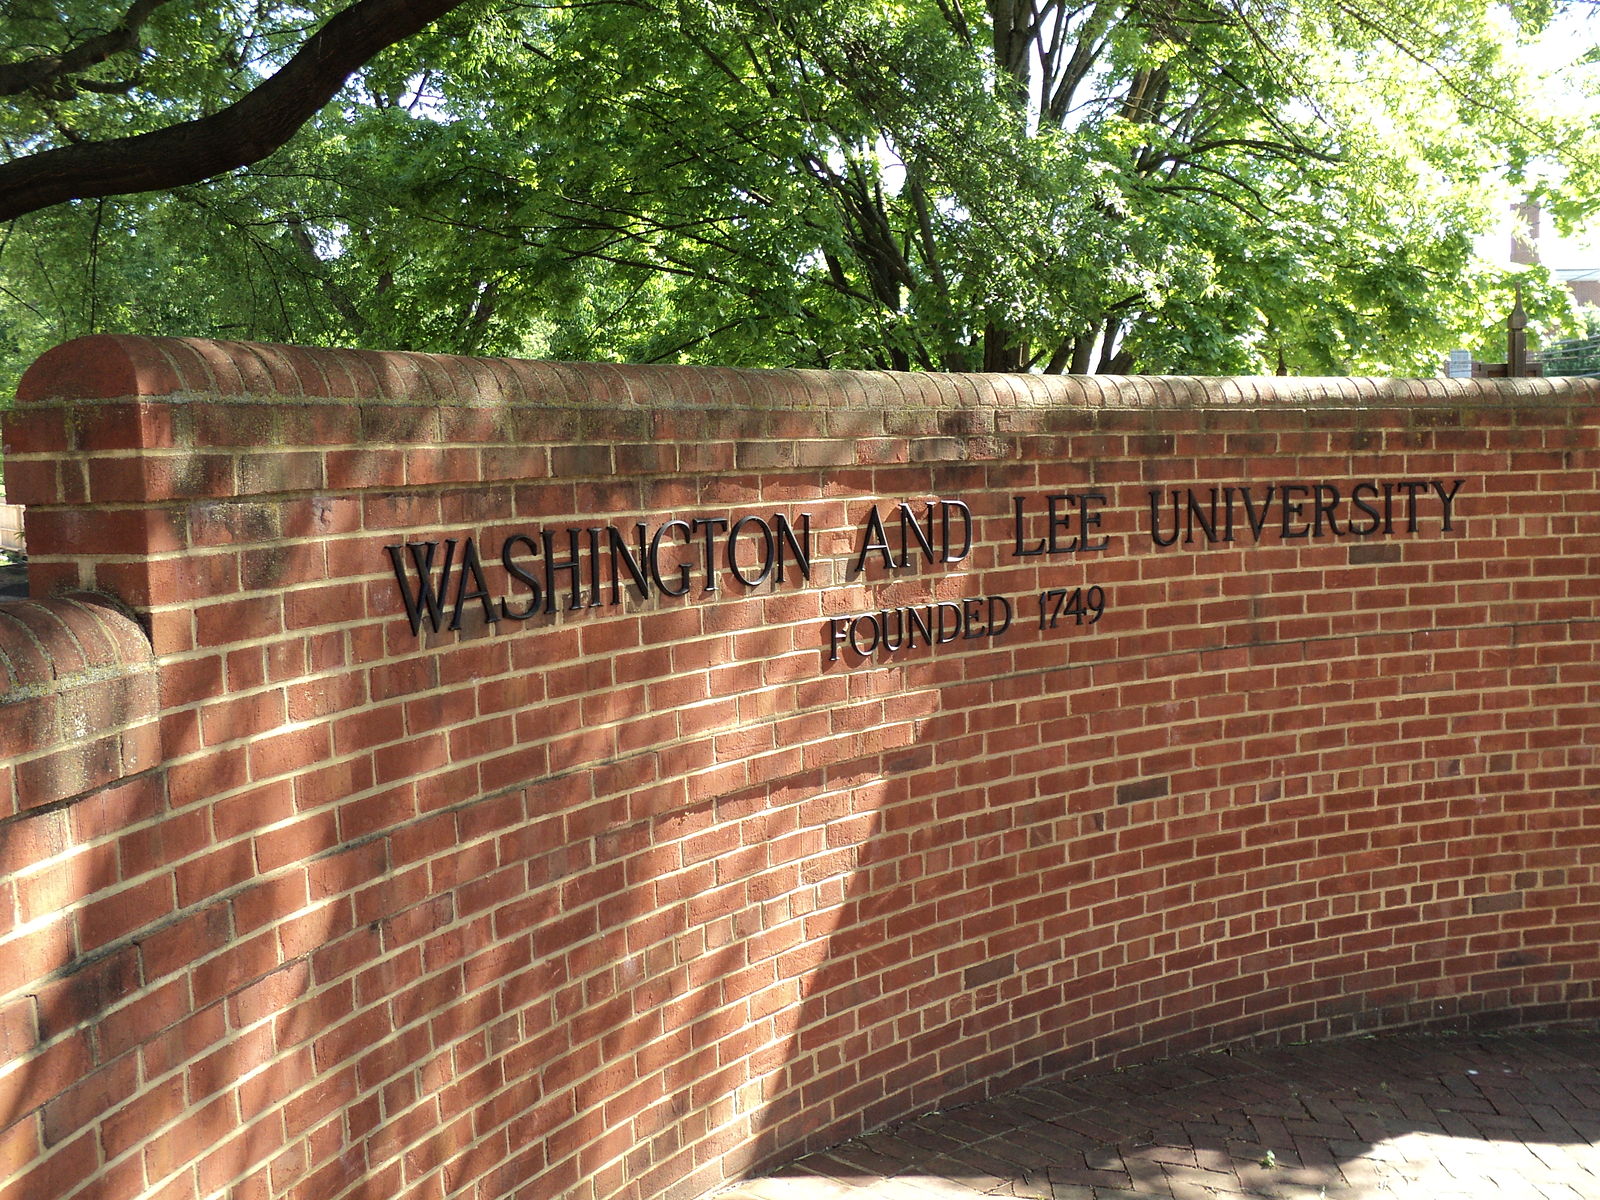 華盛頓與李大學